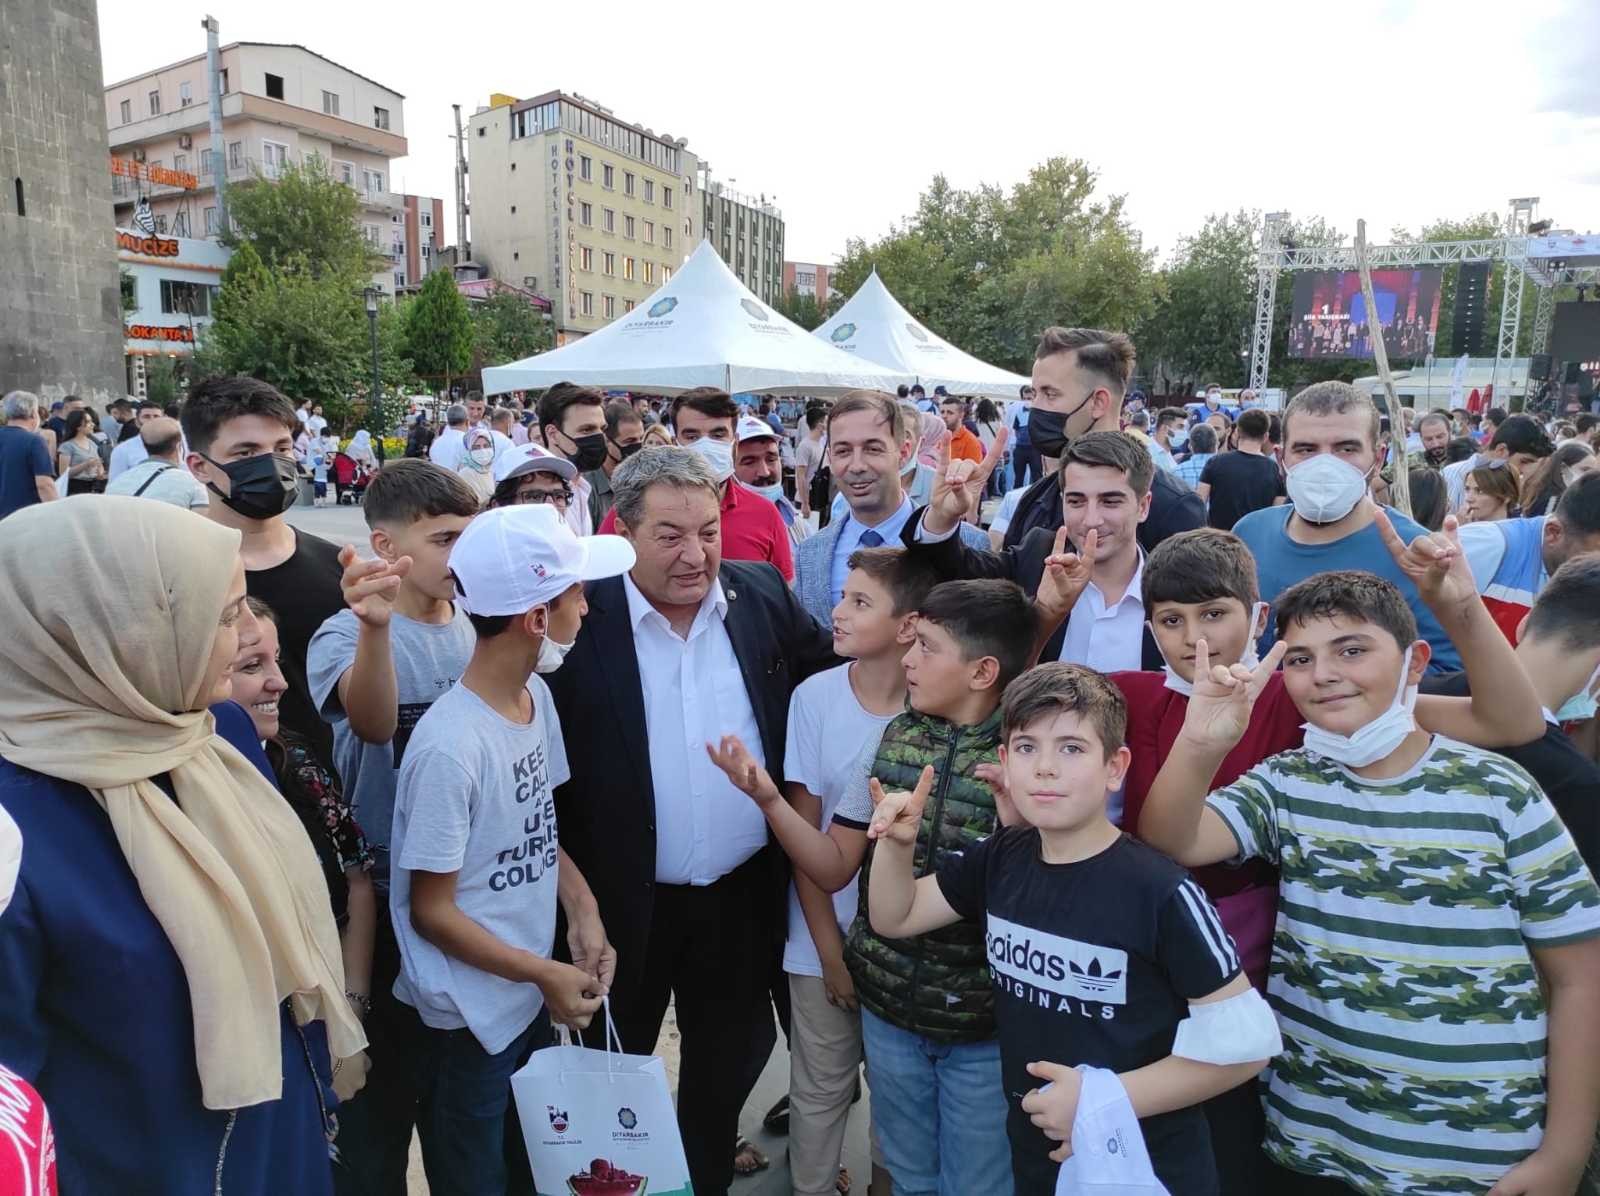 MHP Malatya Milletvekili Fendoğlu, Diyarbakır’da karpuz festivaline katıldı #diyarbakir